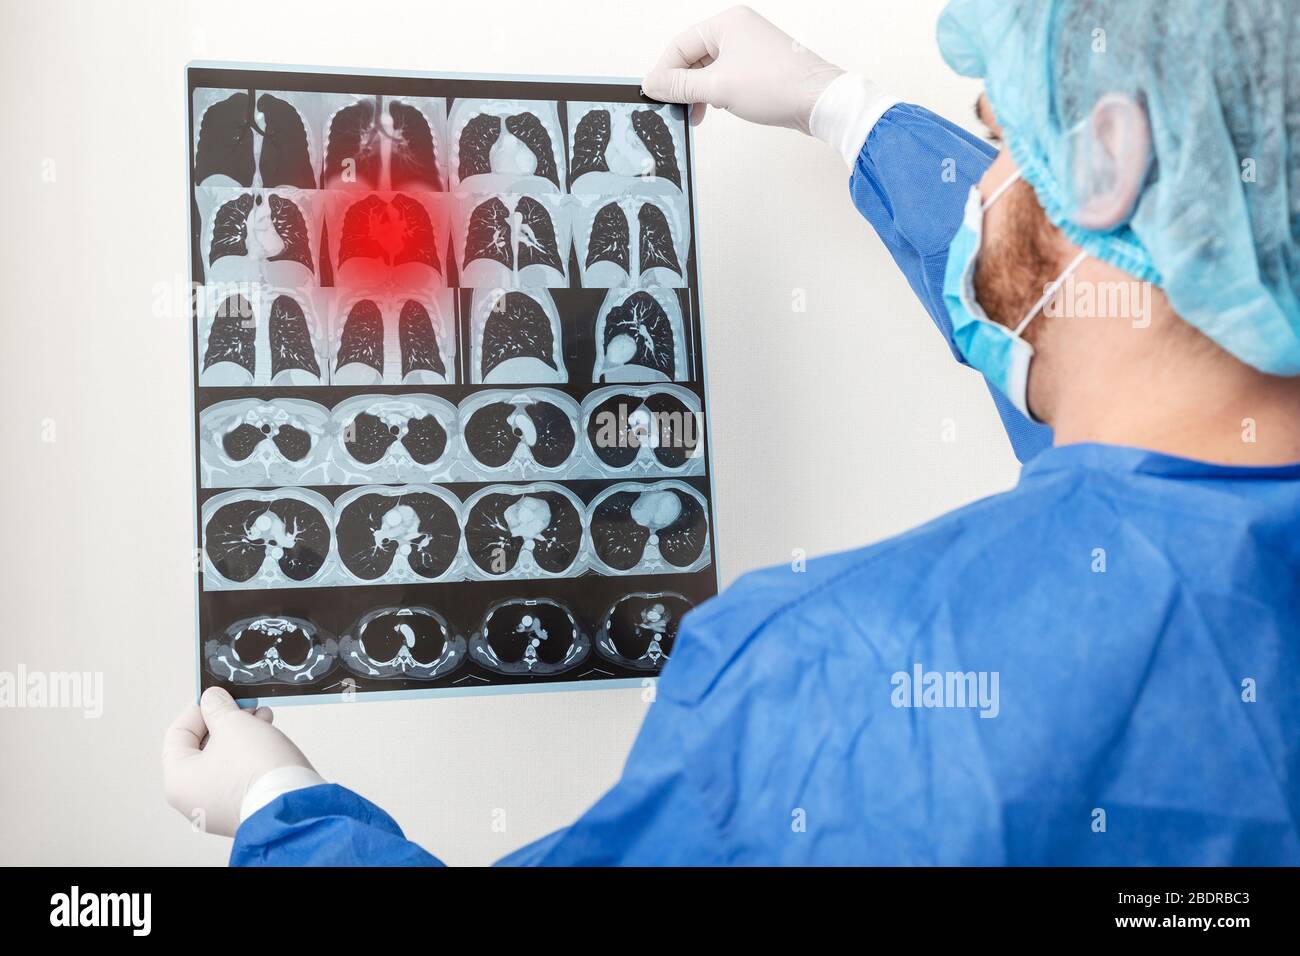 Arzt Chirurg in schützenden uniform überprüfen Röntgenfilm der Lunge Scan. Coronavirus Covid 19, Lungenentzündung, Tuberkulose, Lungenkrebs, Atemwege Stockfoto